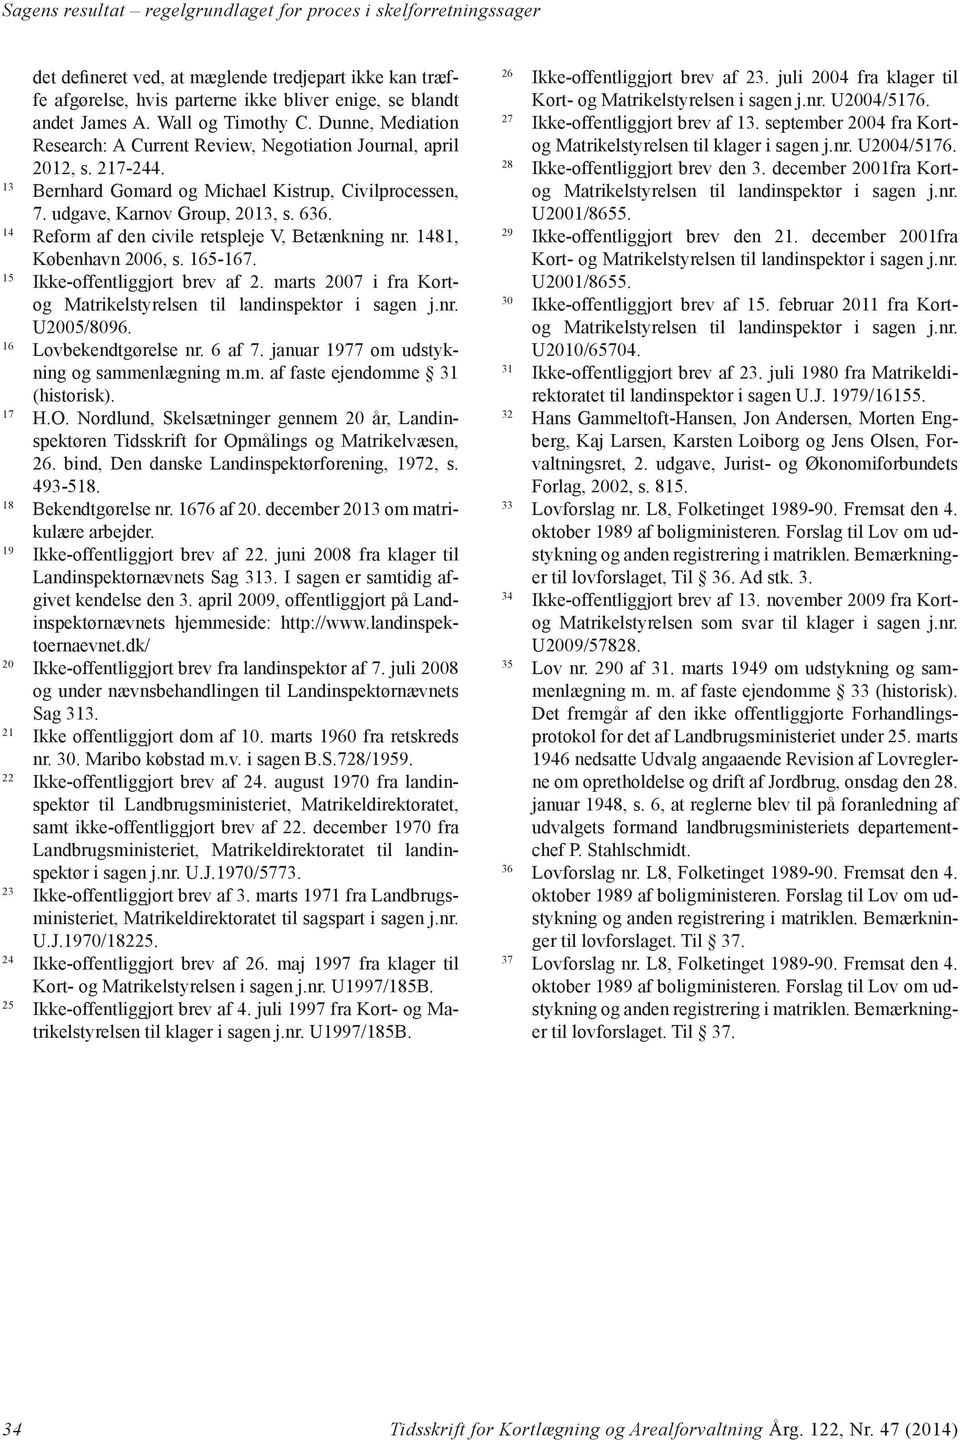 636. 14 Reform af den civile retspleje V, Betænkning nr. 1481, København 2006, s. 165-167. 15 Ikke-offentliggjort brev af 2. marts 2007 i fra Kortog Matrikelstyrelsen til landinspektør i sagen j.nr. U2005/8096.